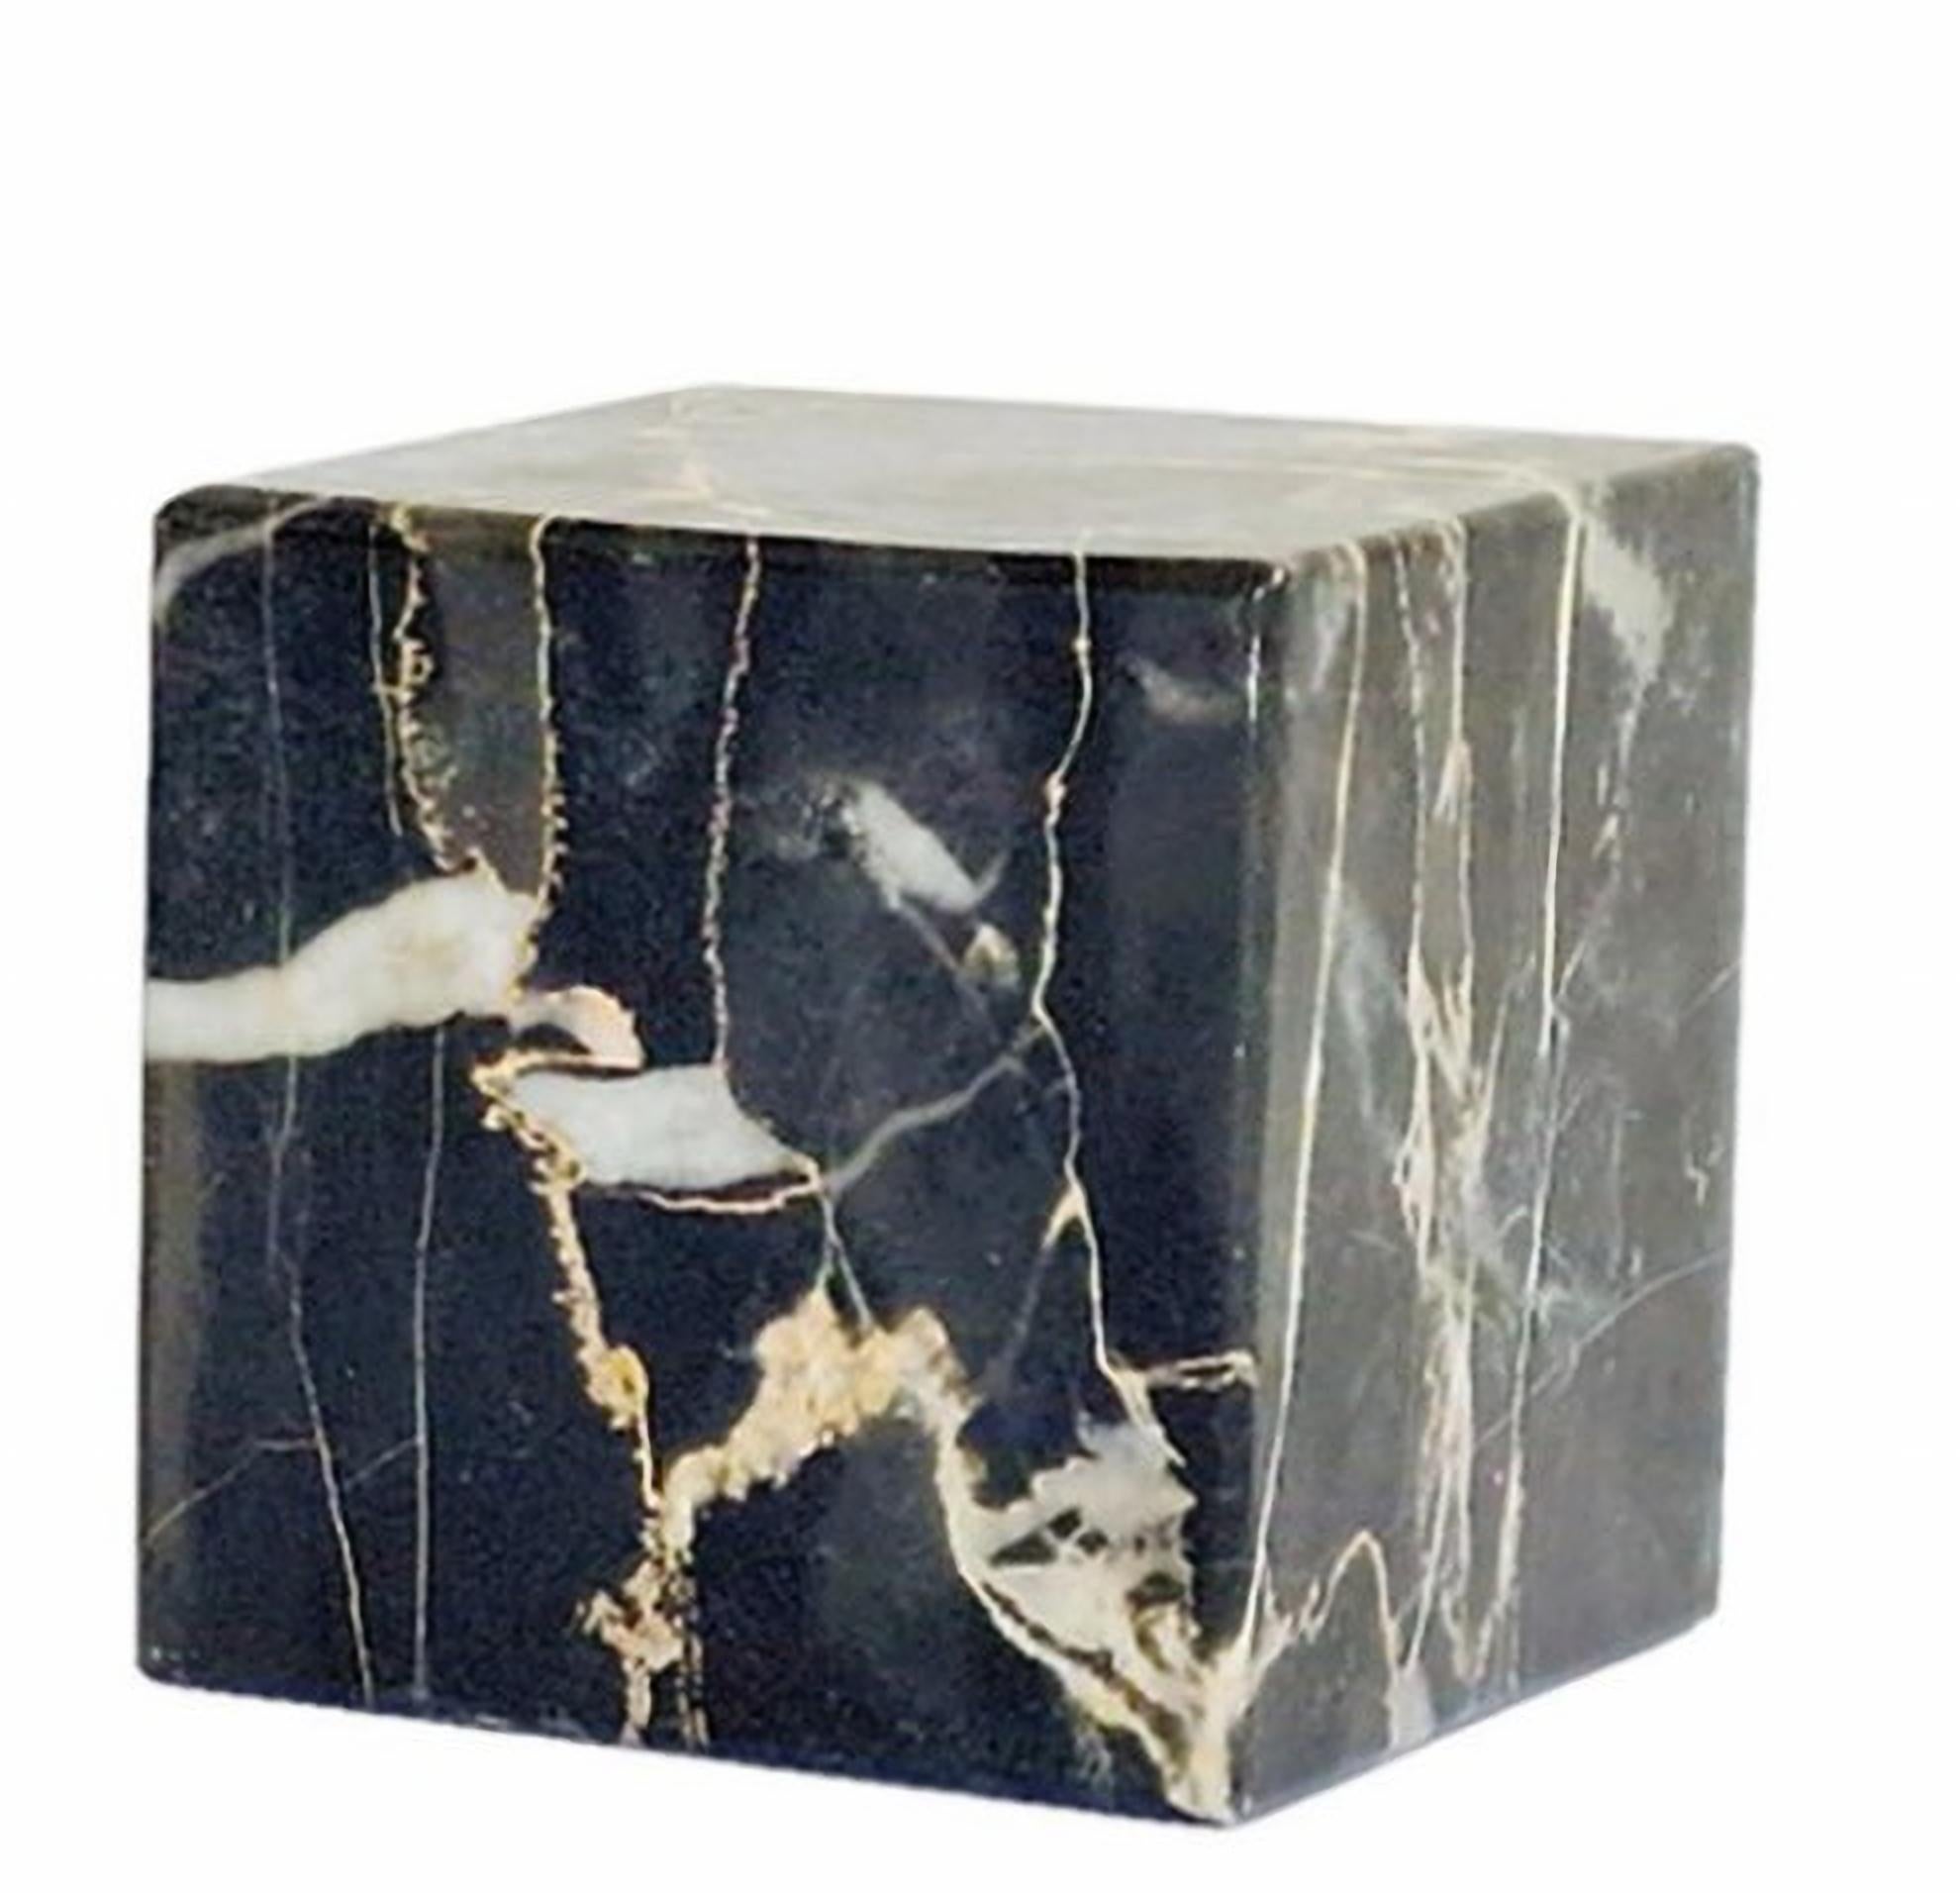 SUITE DE TROIS POIDS DE PAPIER ITALIEN En marbre noir veiné 20ème siècle
En marbre noir veiné, l'un est carré, l'autre conique et le dernier pyramidal.
Dimensions du cône : h. 15cm
bonne condition